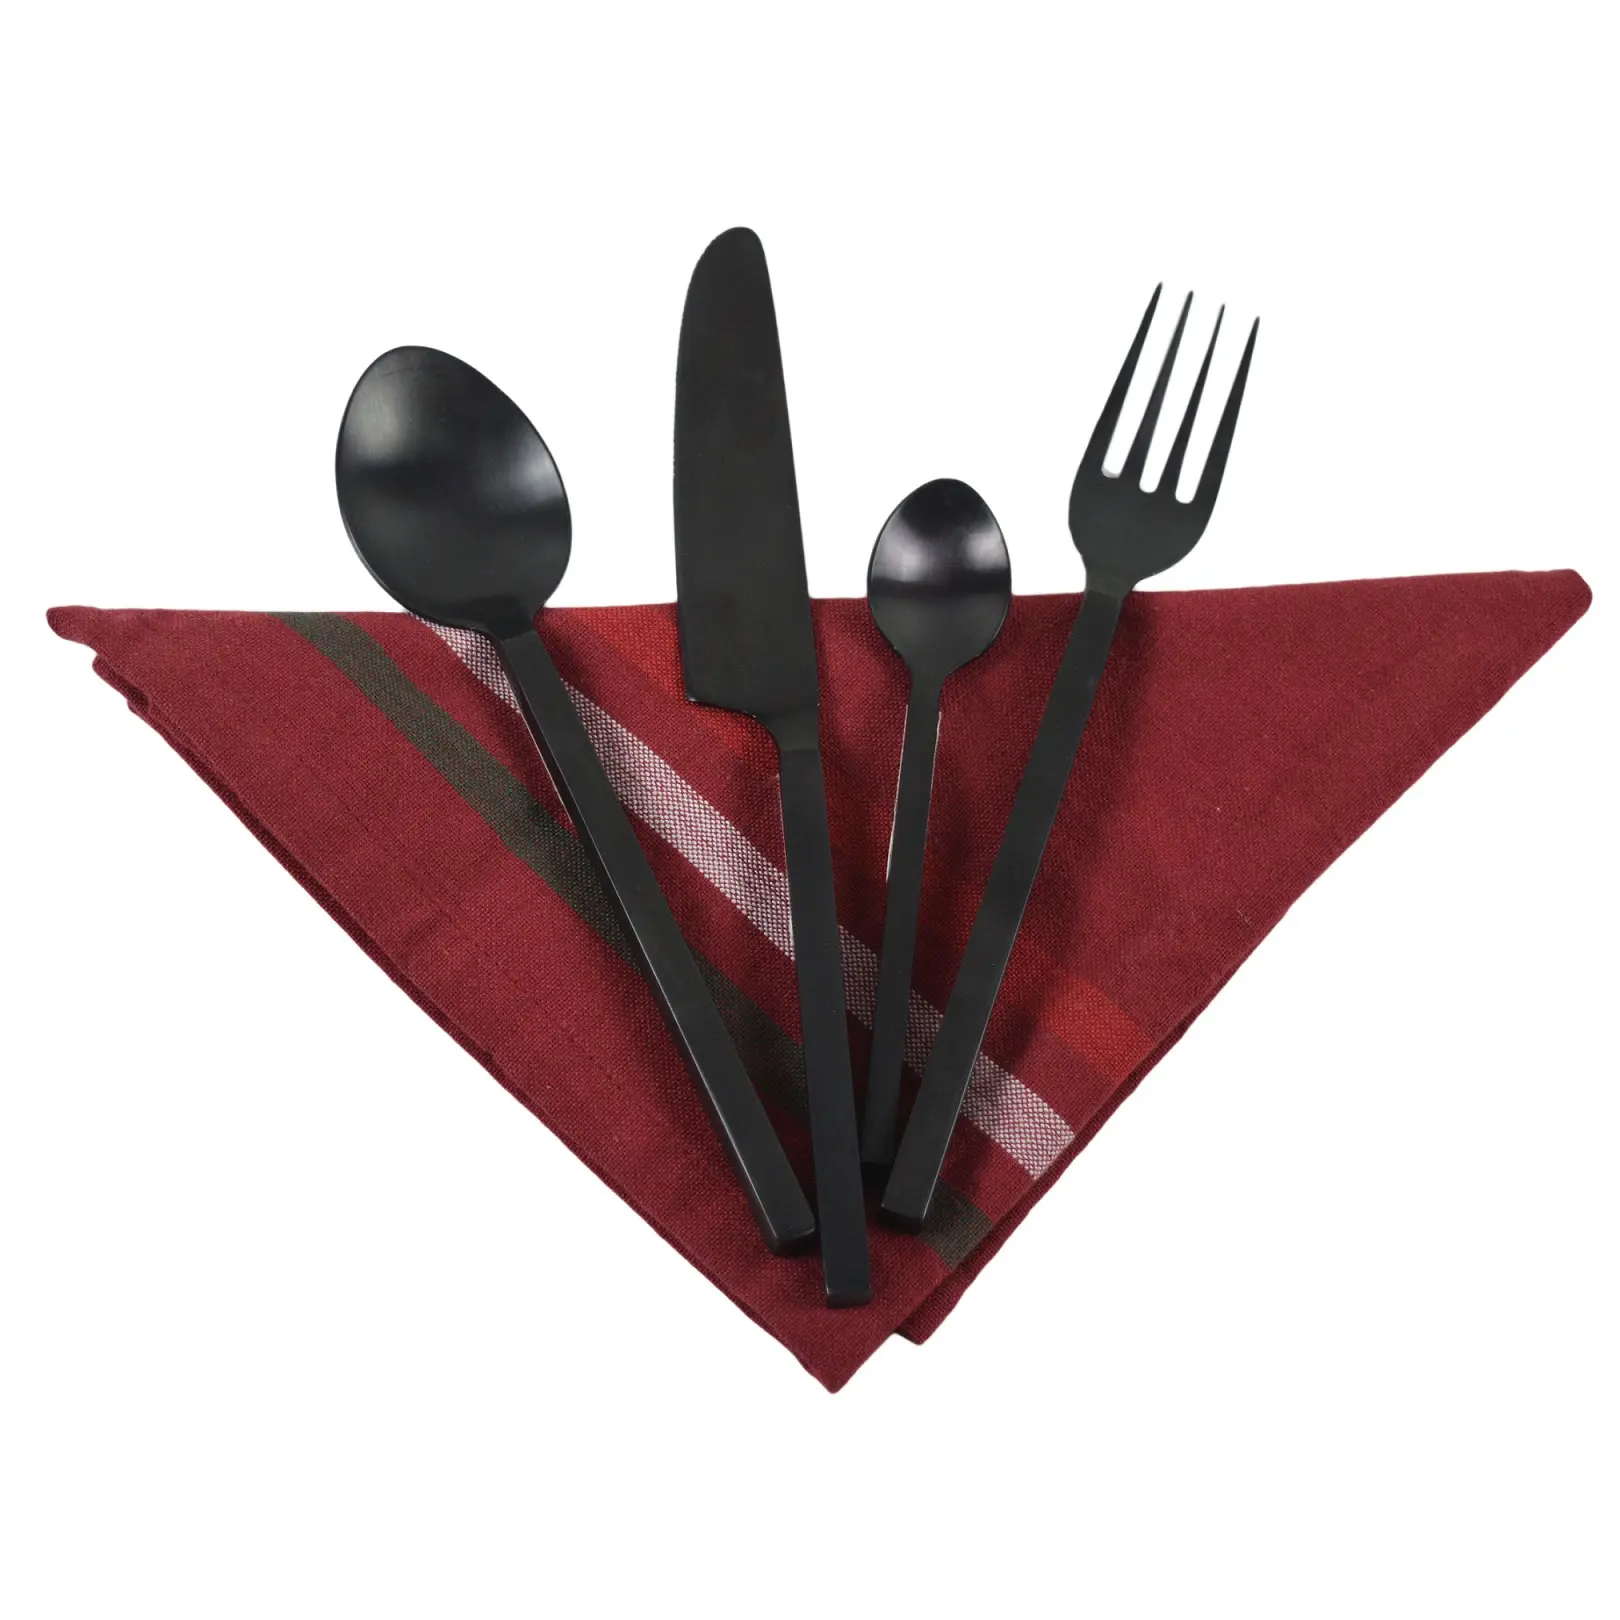 Modern lüks restoranlar kullanımlık çatal bıçak takımları yemek eşyaları mutfak aracı çevre dostu yenilikçi siyah bitirme